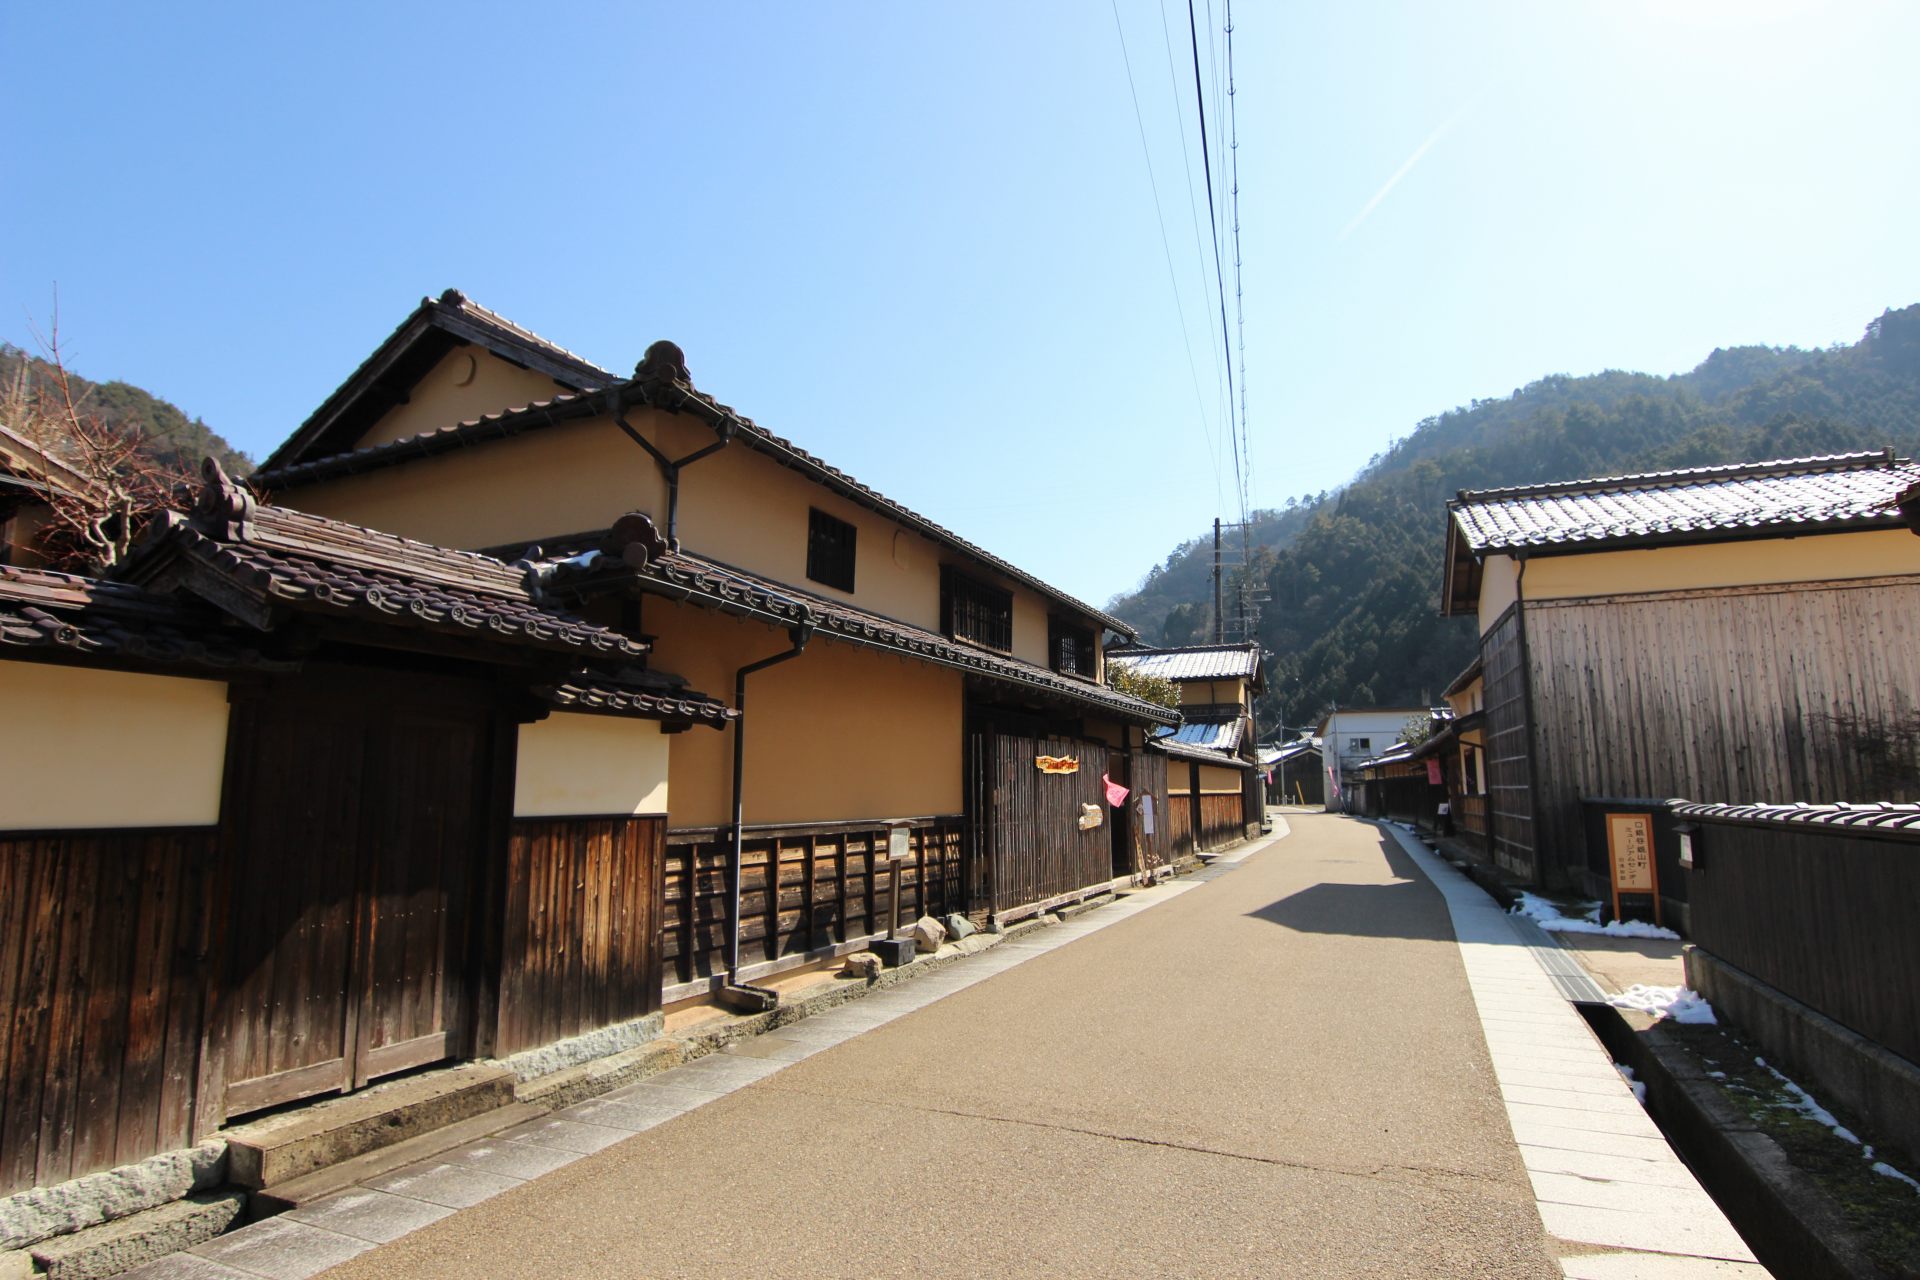 Después de recorrer Ikuno Ginzan, conduce 5 minutos y visita el antiguo pueblo minero. Elegantes casas de principios de la era moderna muestran la prosperidad de la época.